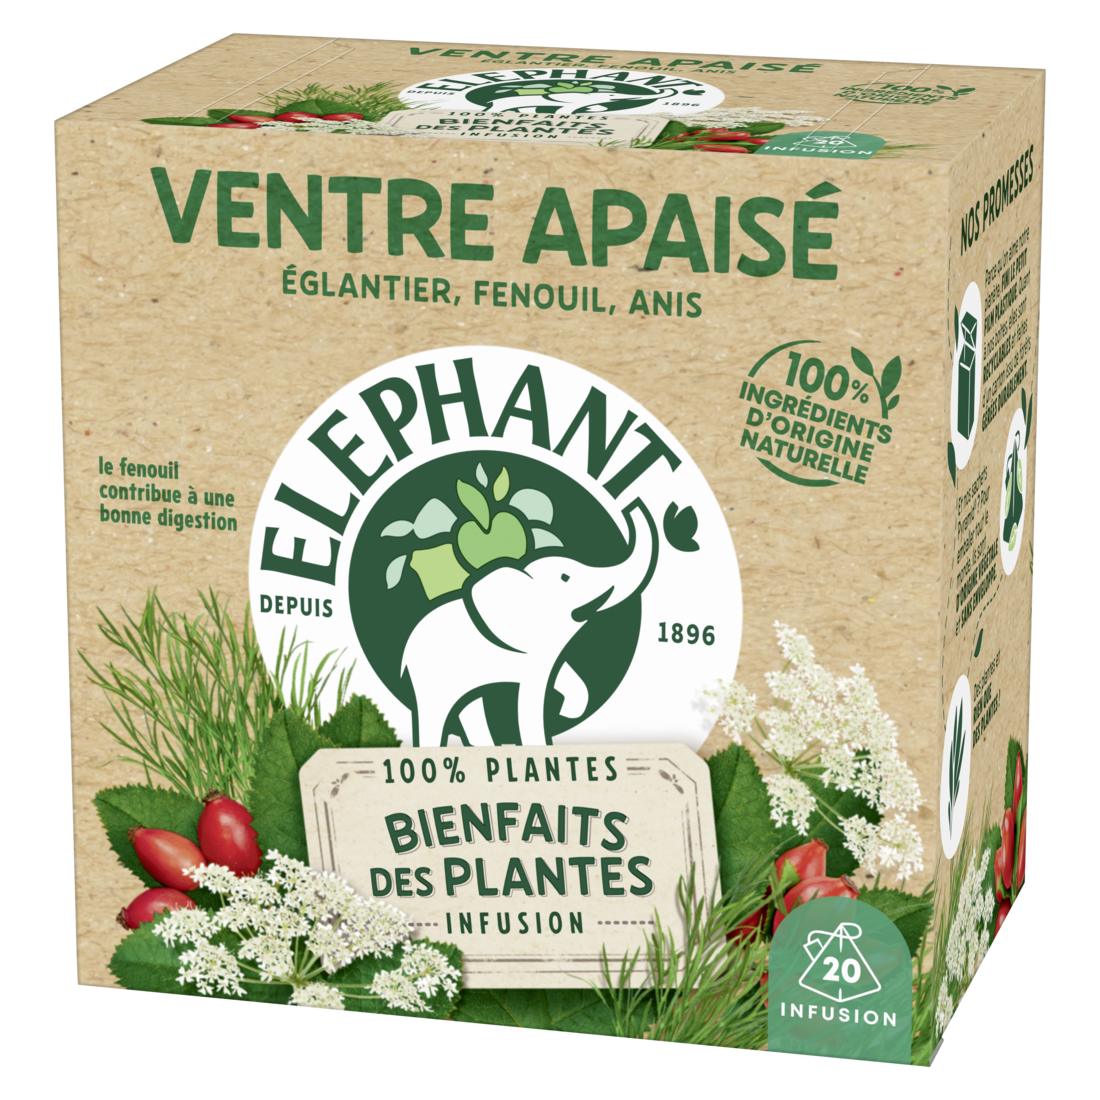 Eléphant lance des tisanes aux plantes françaises